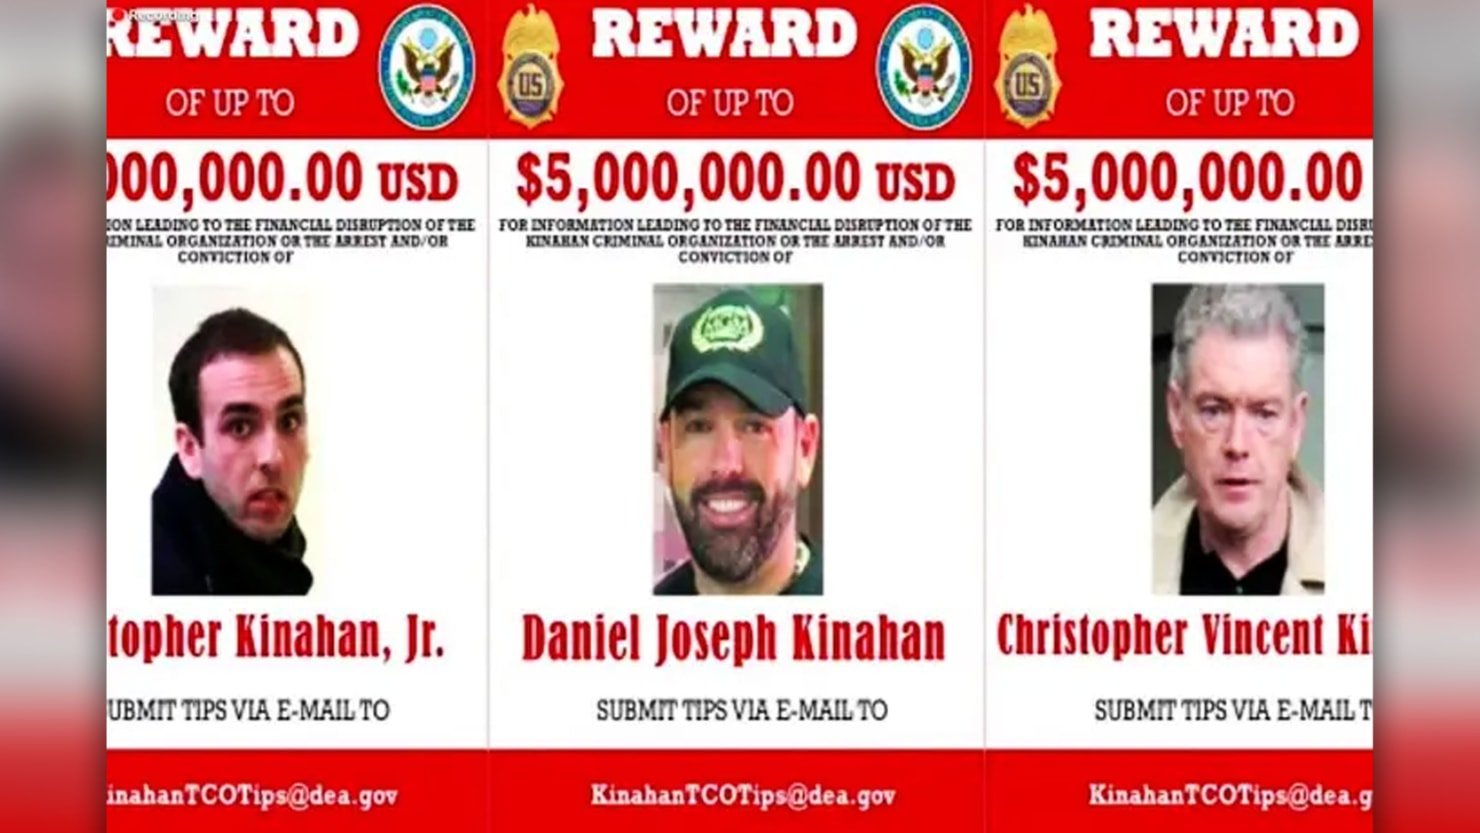 Daniel Kinahan, promotor de boxeo irlandés y gángster, tiene ahora una recompensa de 5 millones de dólares por su cabeza